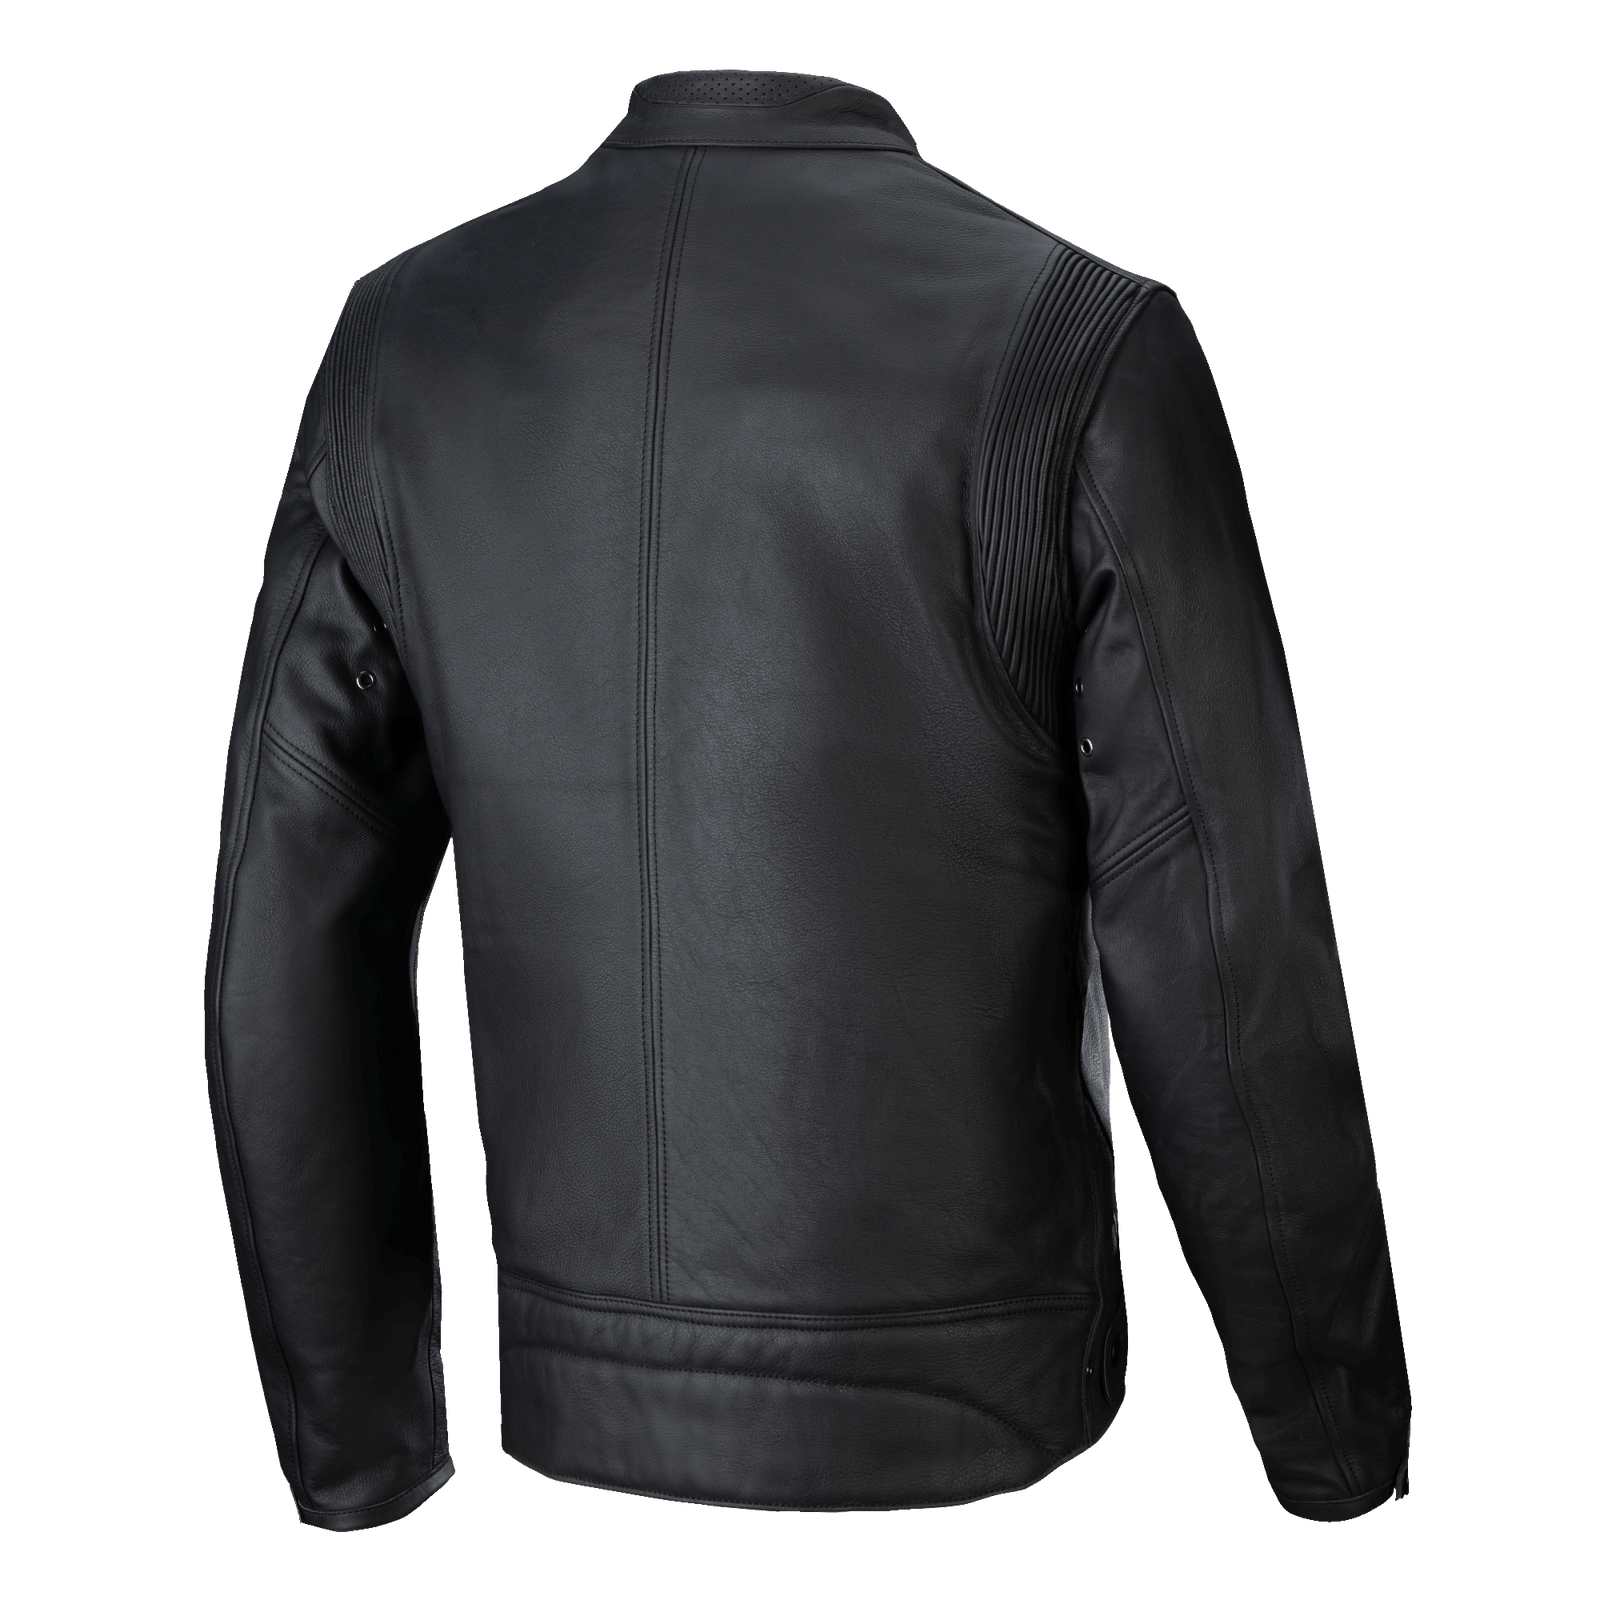 Dyno Leather Jacket